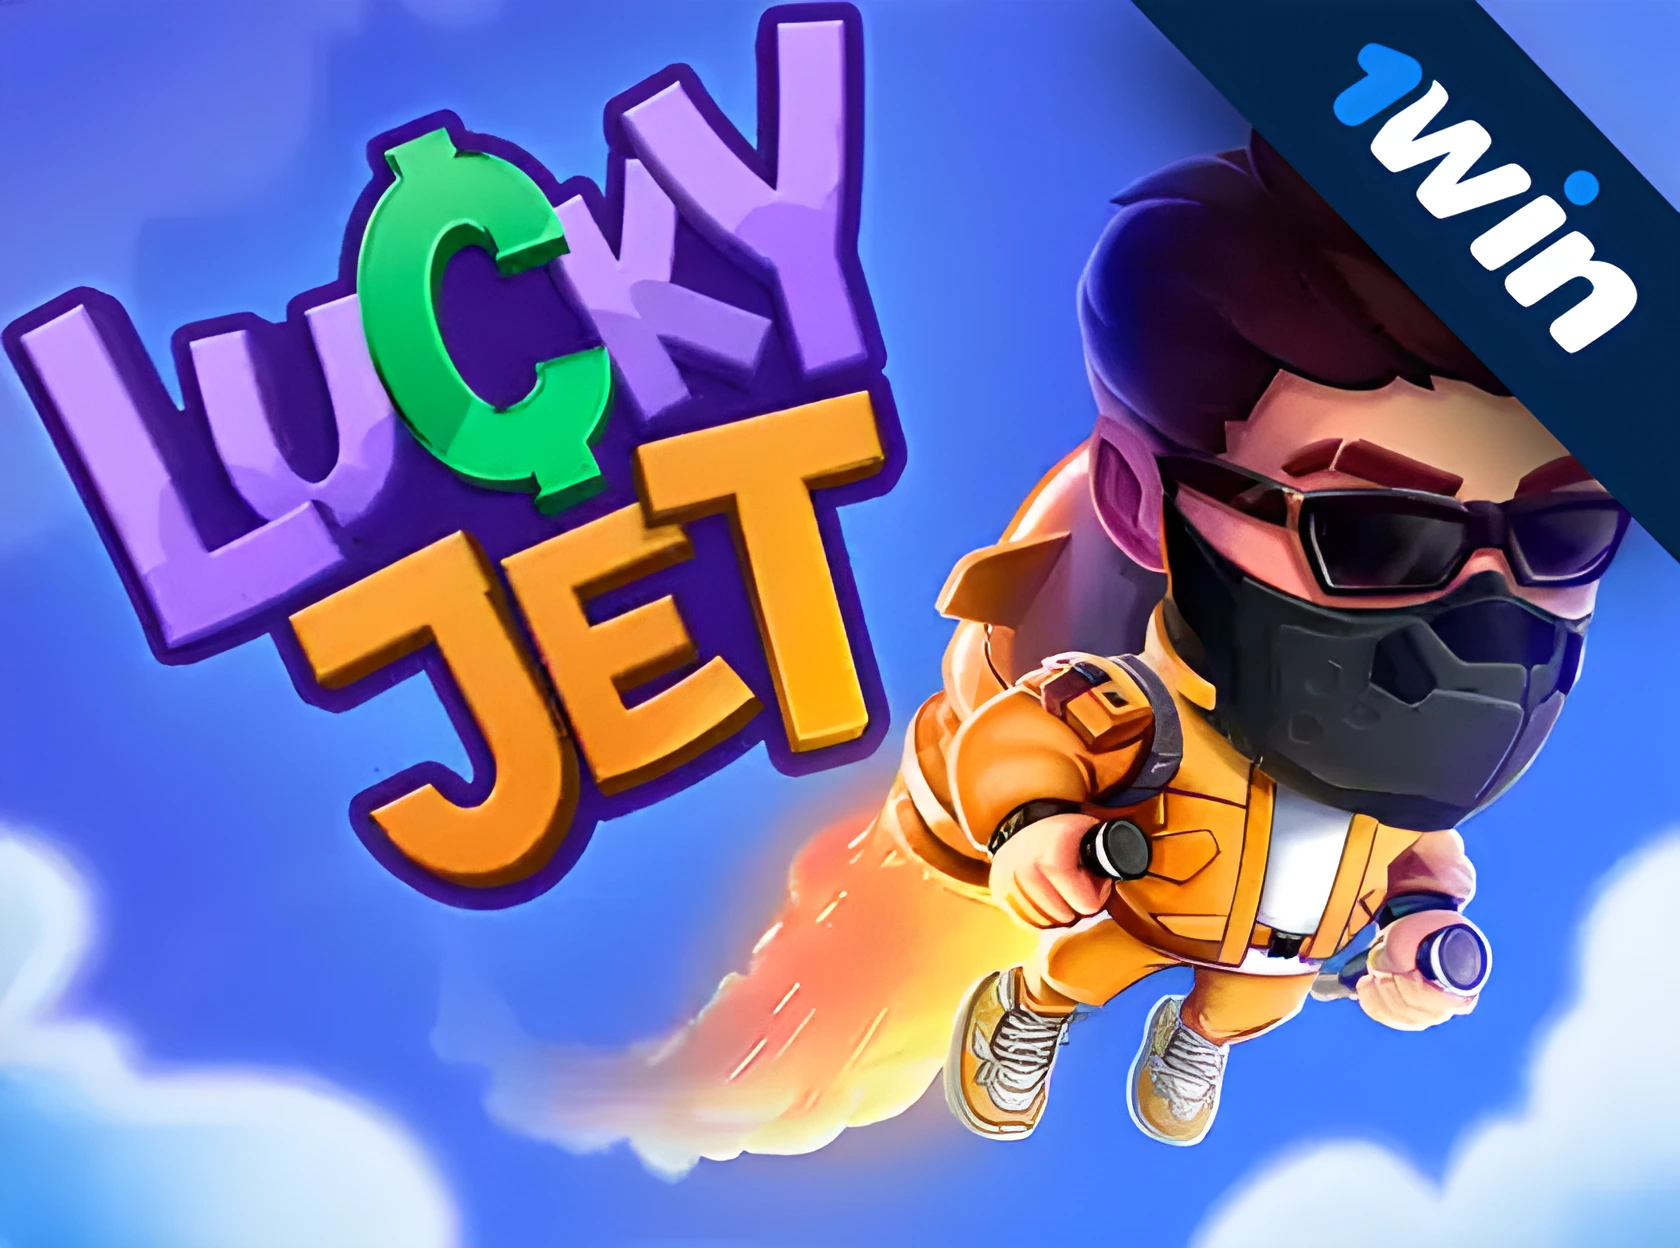 Lucky Jet рдкреИрд╕реЗ рдХреЗ рд▓рд┐рдП рдПрдХ рдмрд╣реБрдд рд╣реА рдЖрд╕рд╛рди рдЧреЗрдо рд╣реИ рдСрдирд▓рд╛рдЗрди рдЦреЗрд▓рдирд╛